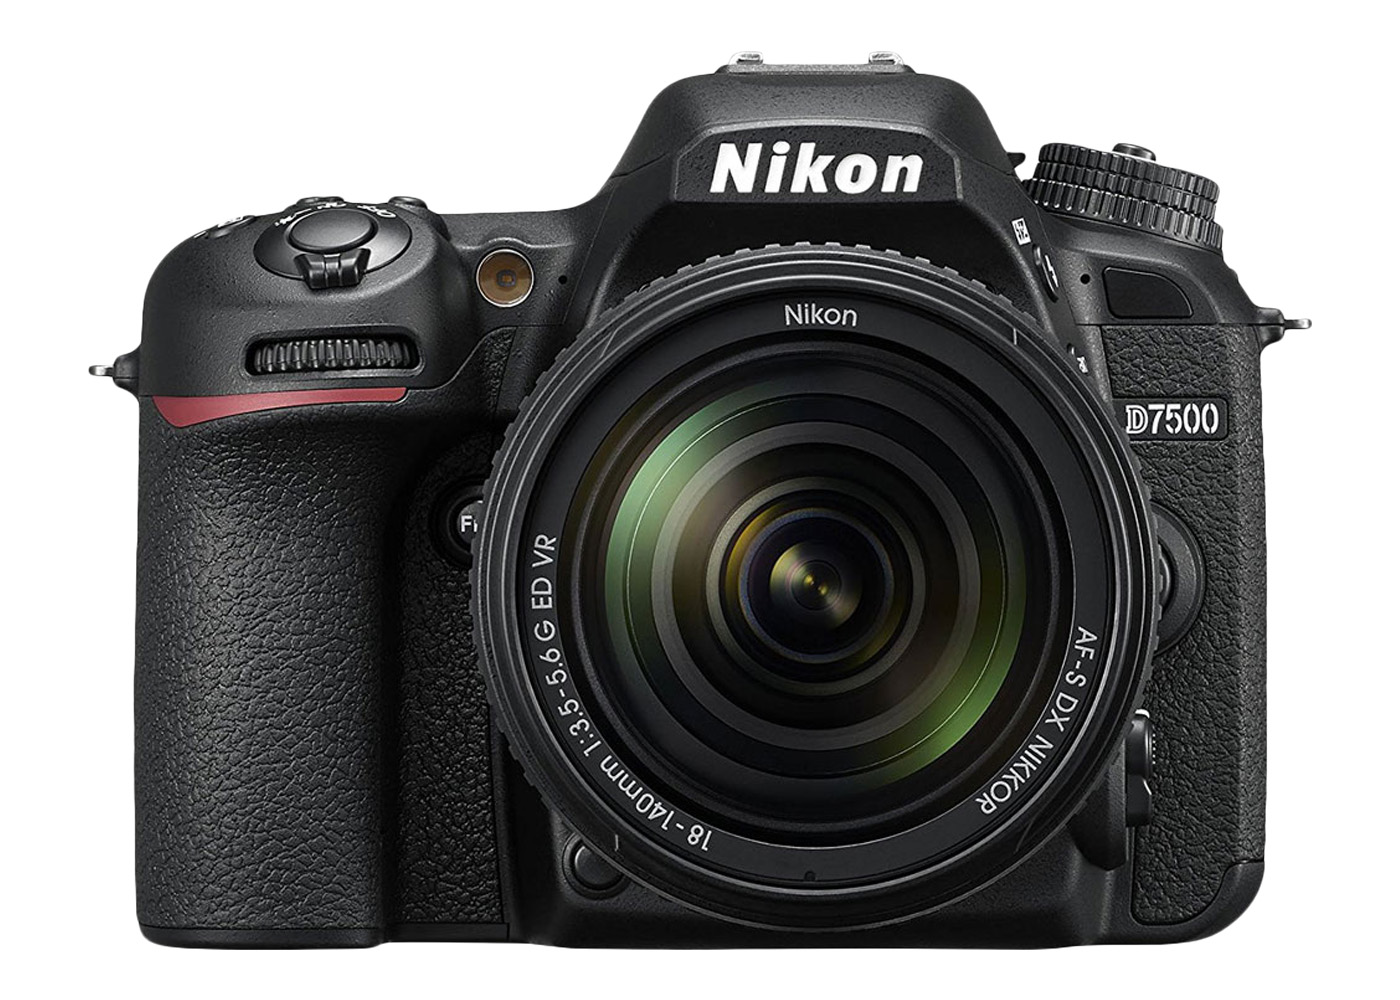 Nikon ニコン AF-S 18-140mm f3.5-5.6G ED VR